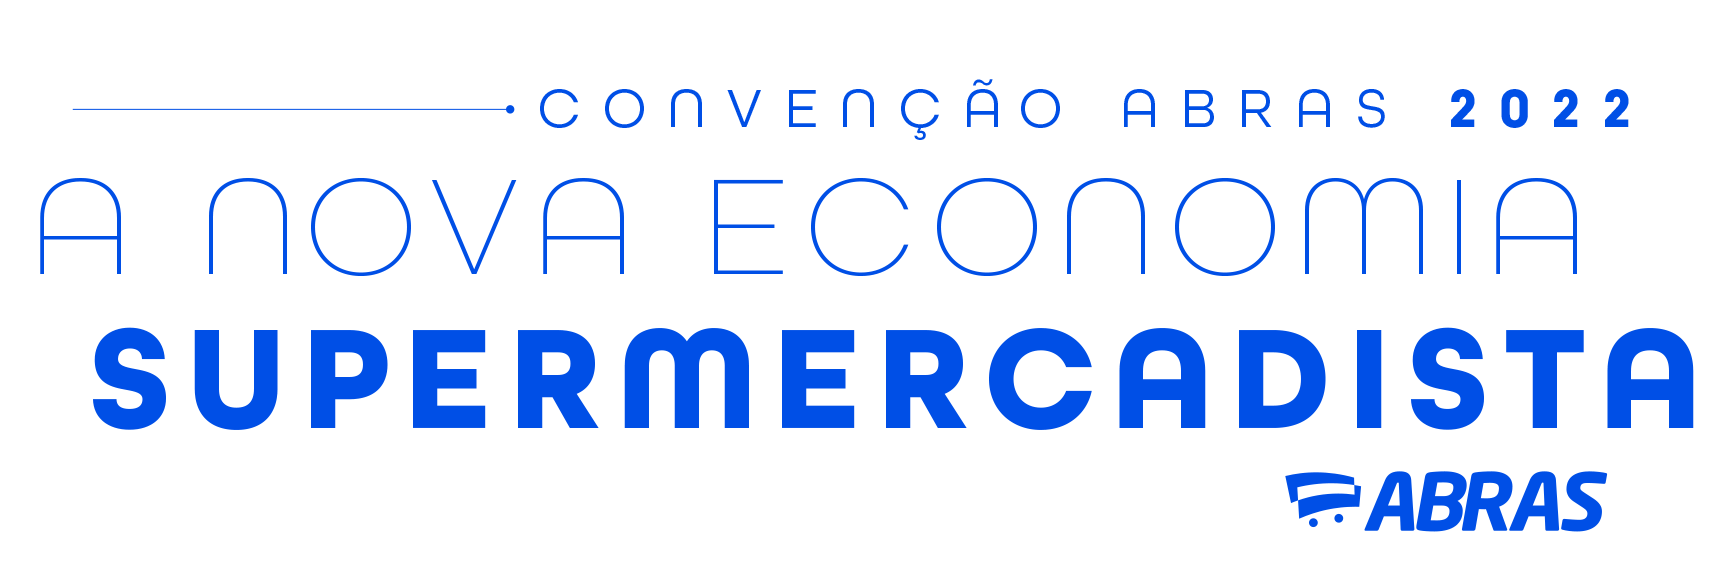 Logo Convenção ABRAS